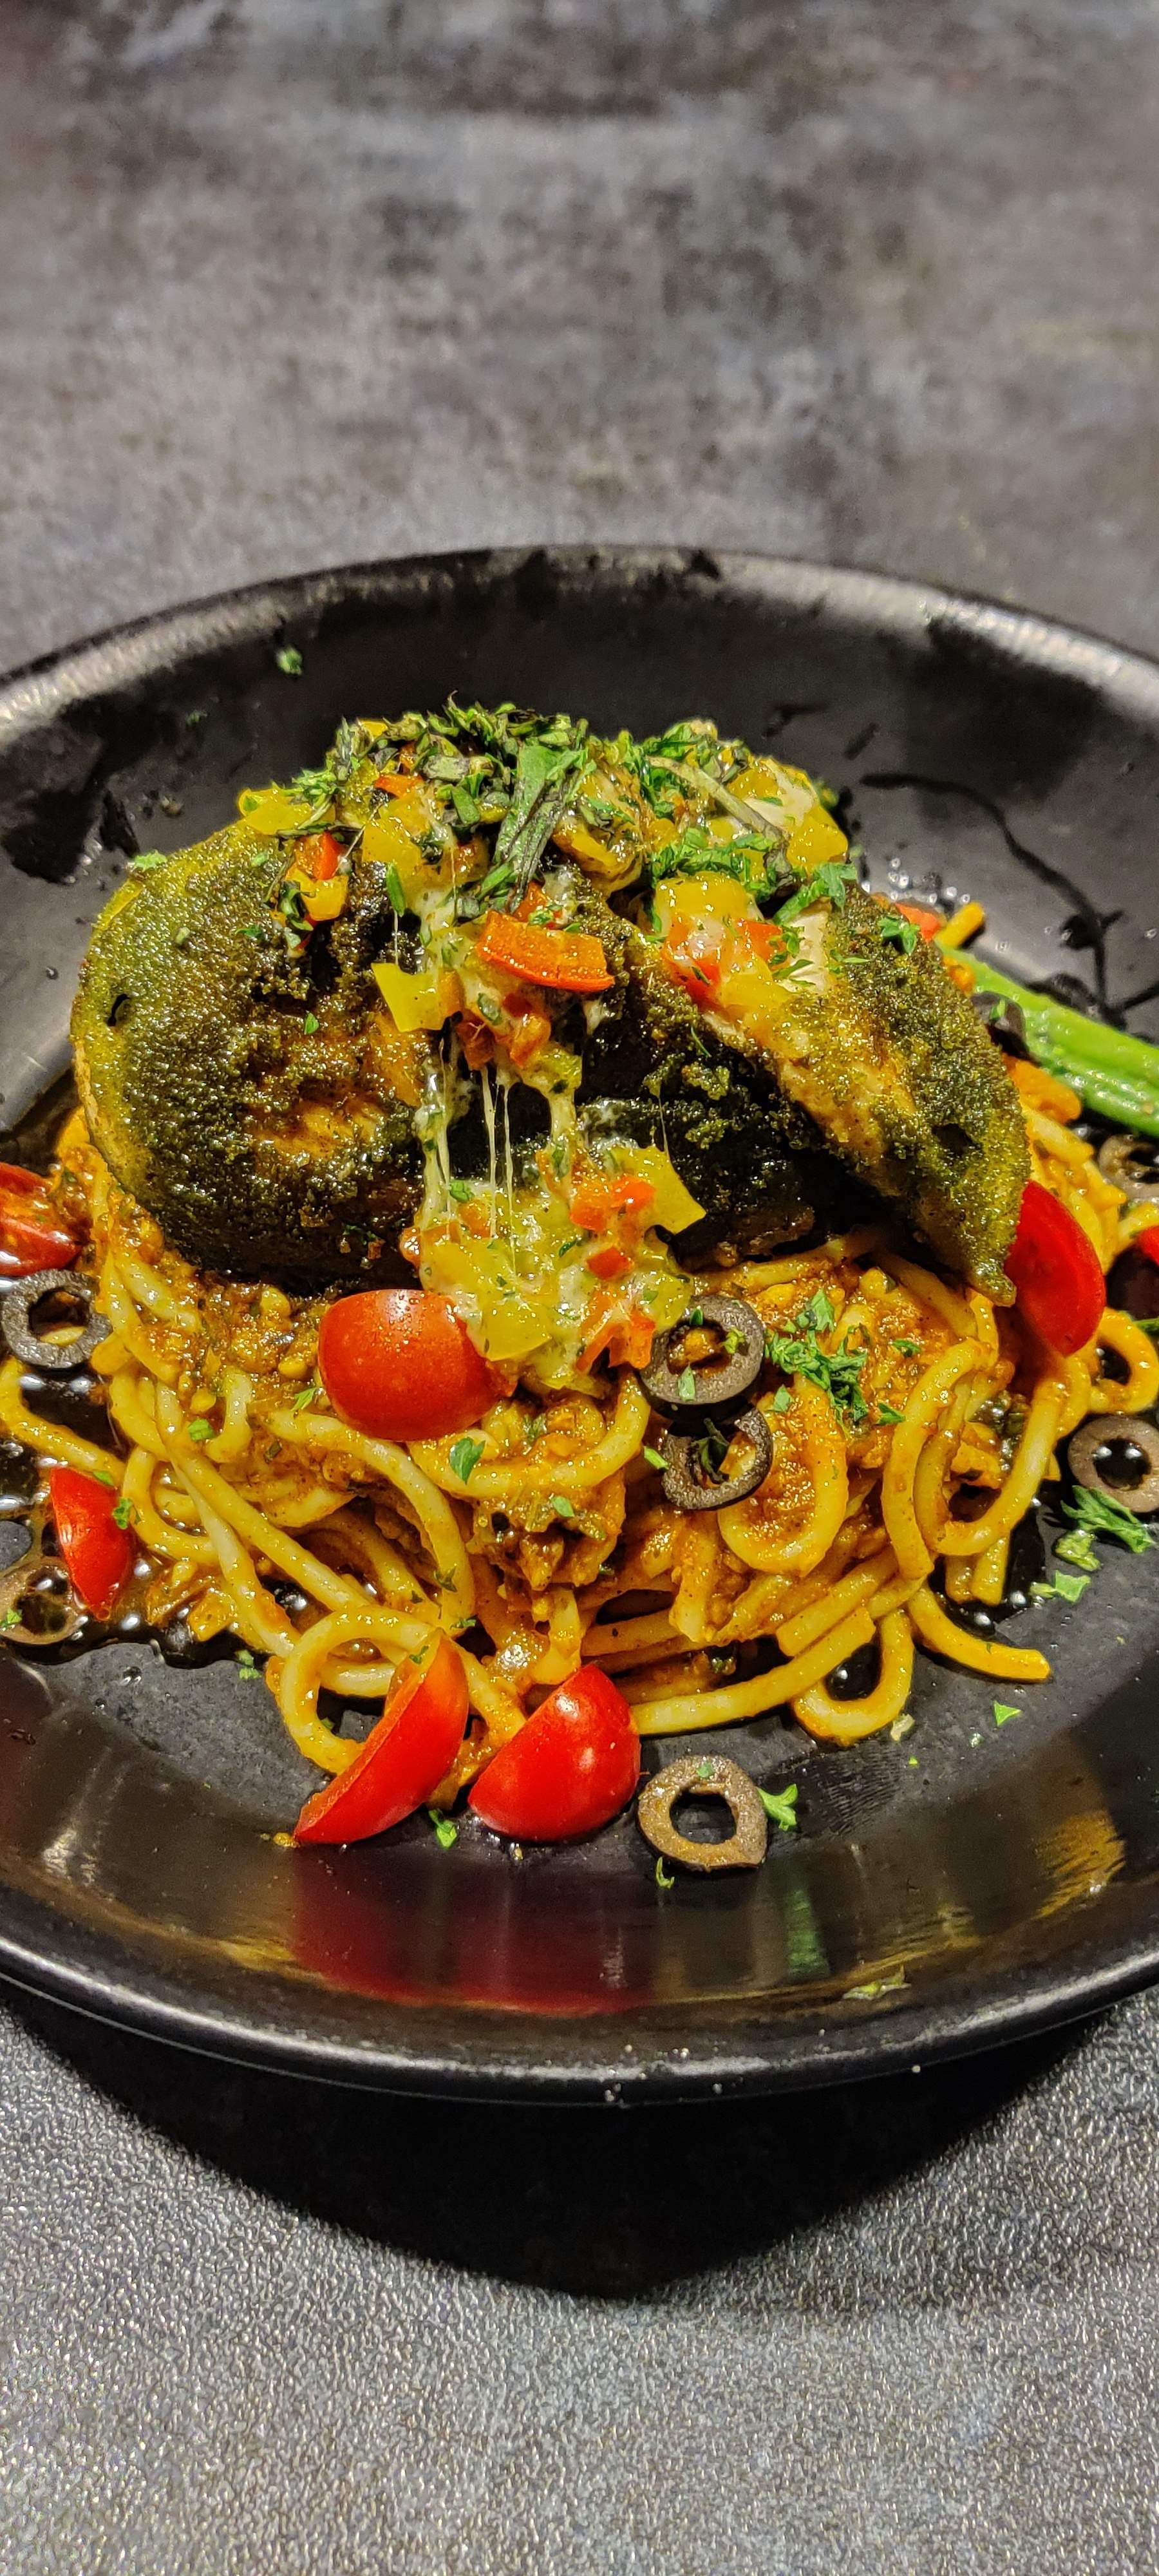 Food,Cuisine,Dish,Capellini,Ingredient,Spaghetti alla puttanesca,Spaghetti,Recipe,Produce,Spaghetti aglio e olio